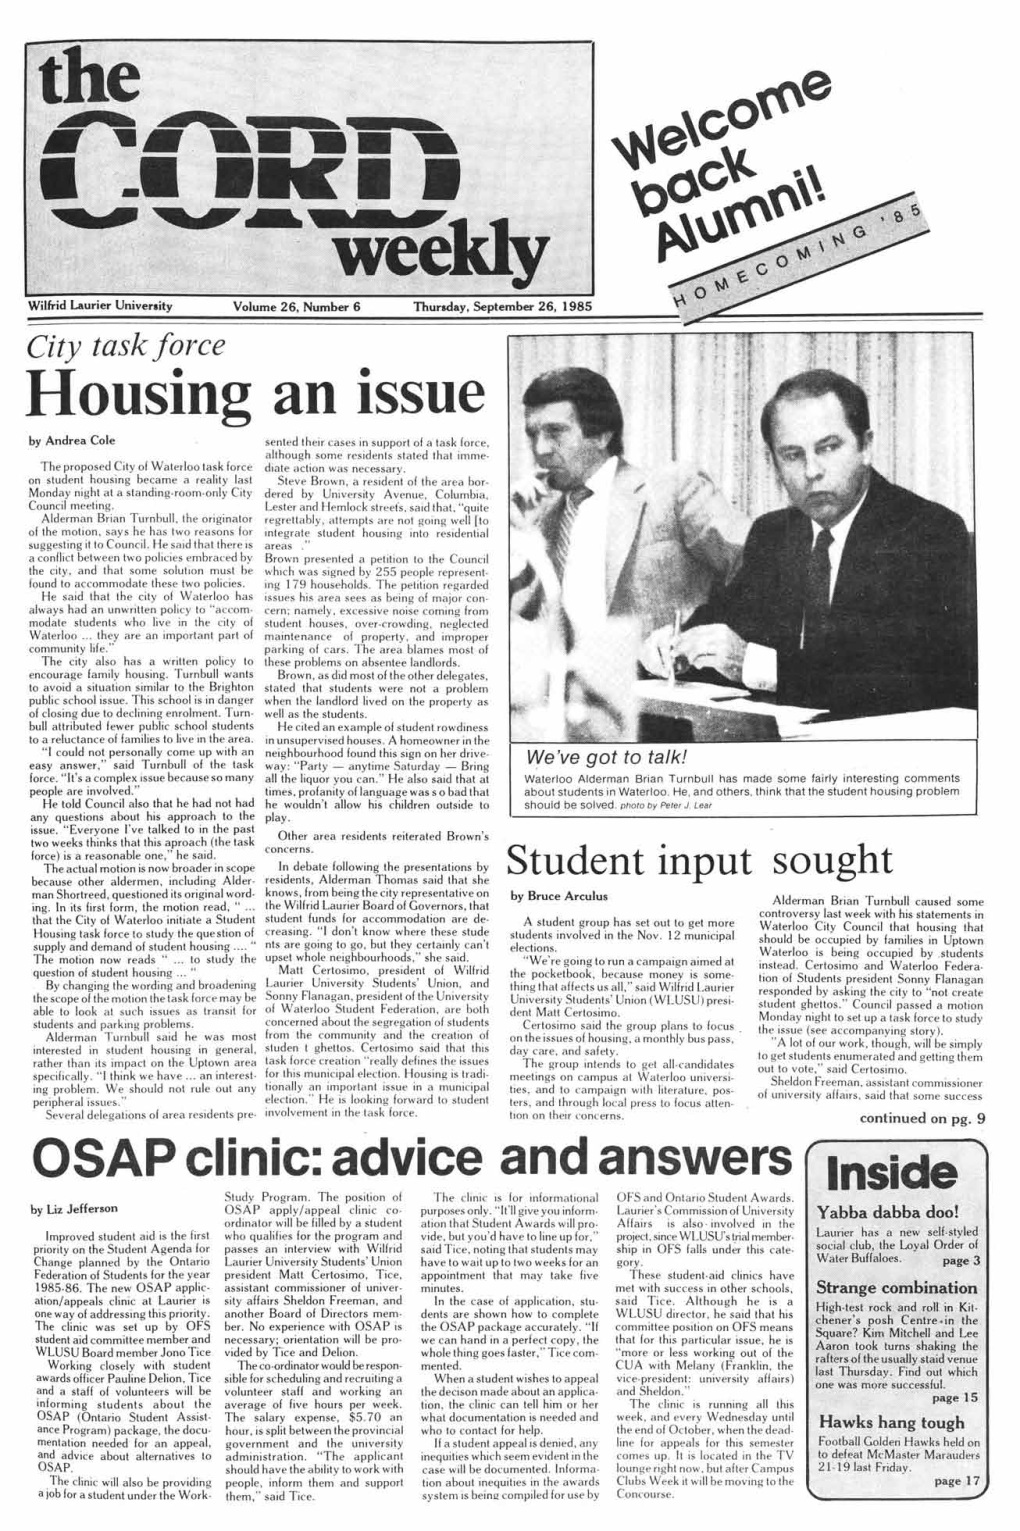 The CORD Weekly Welcomeback Alumni! HOMECOMING '85